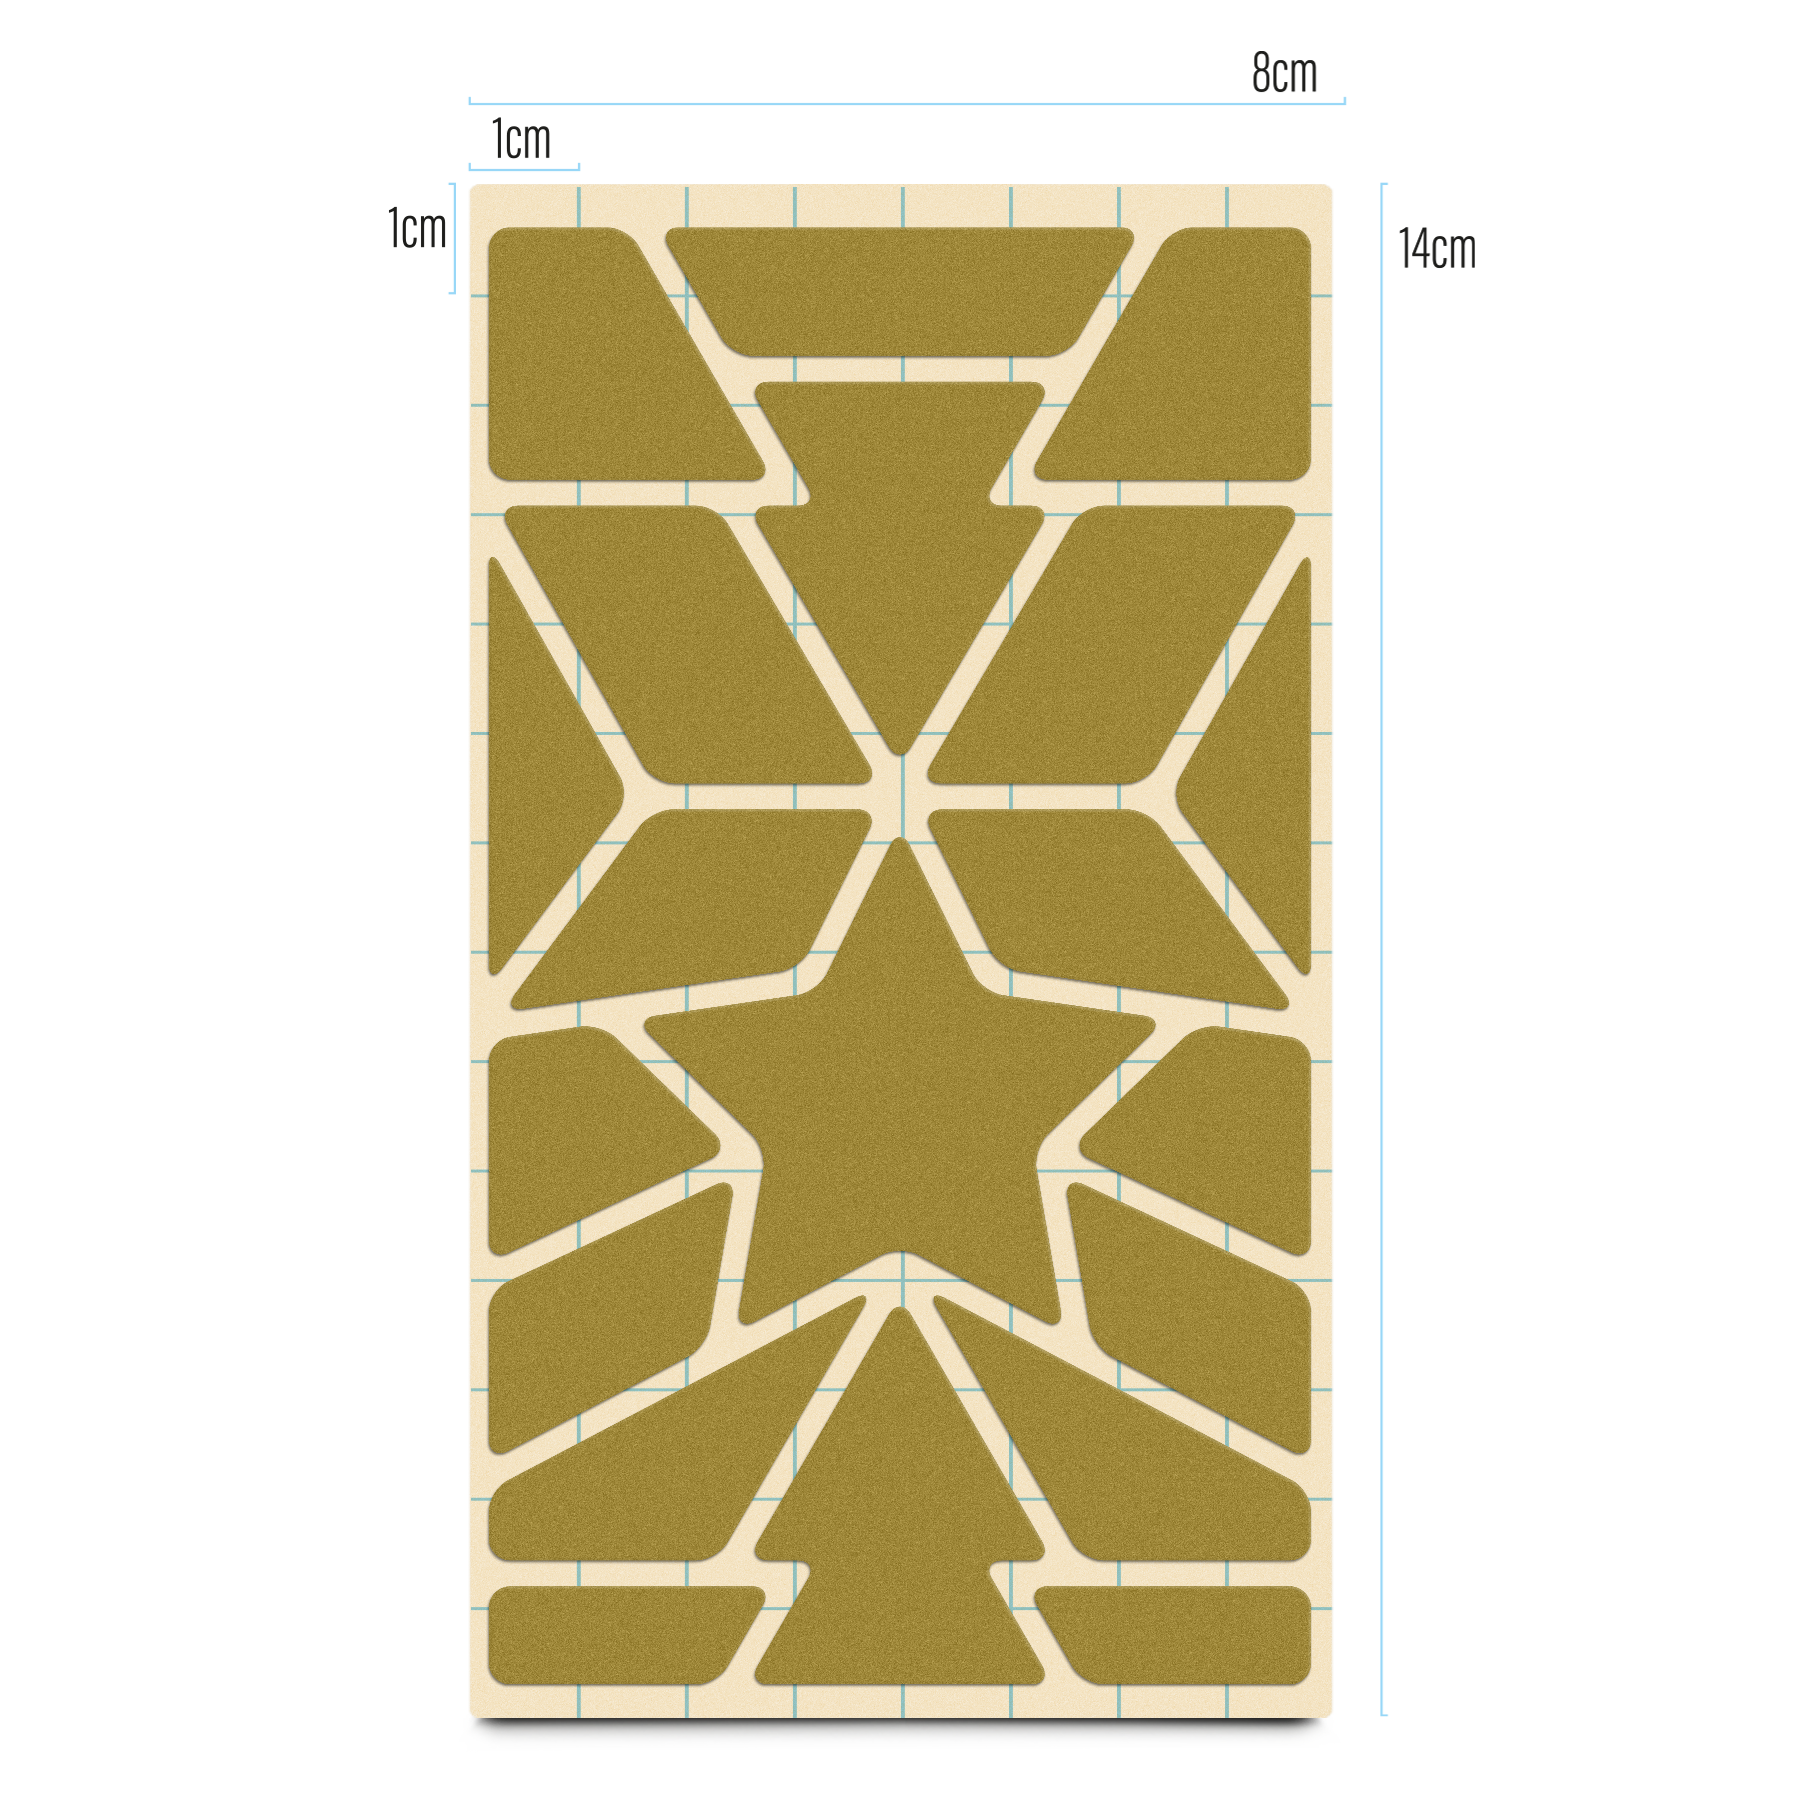 Produktbild Reflektierende Textilsticker, Design Stern, Stickerbogen Raster, gold